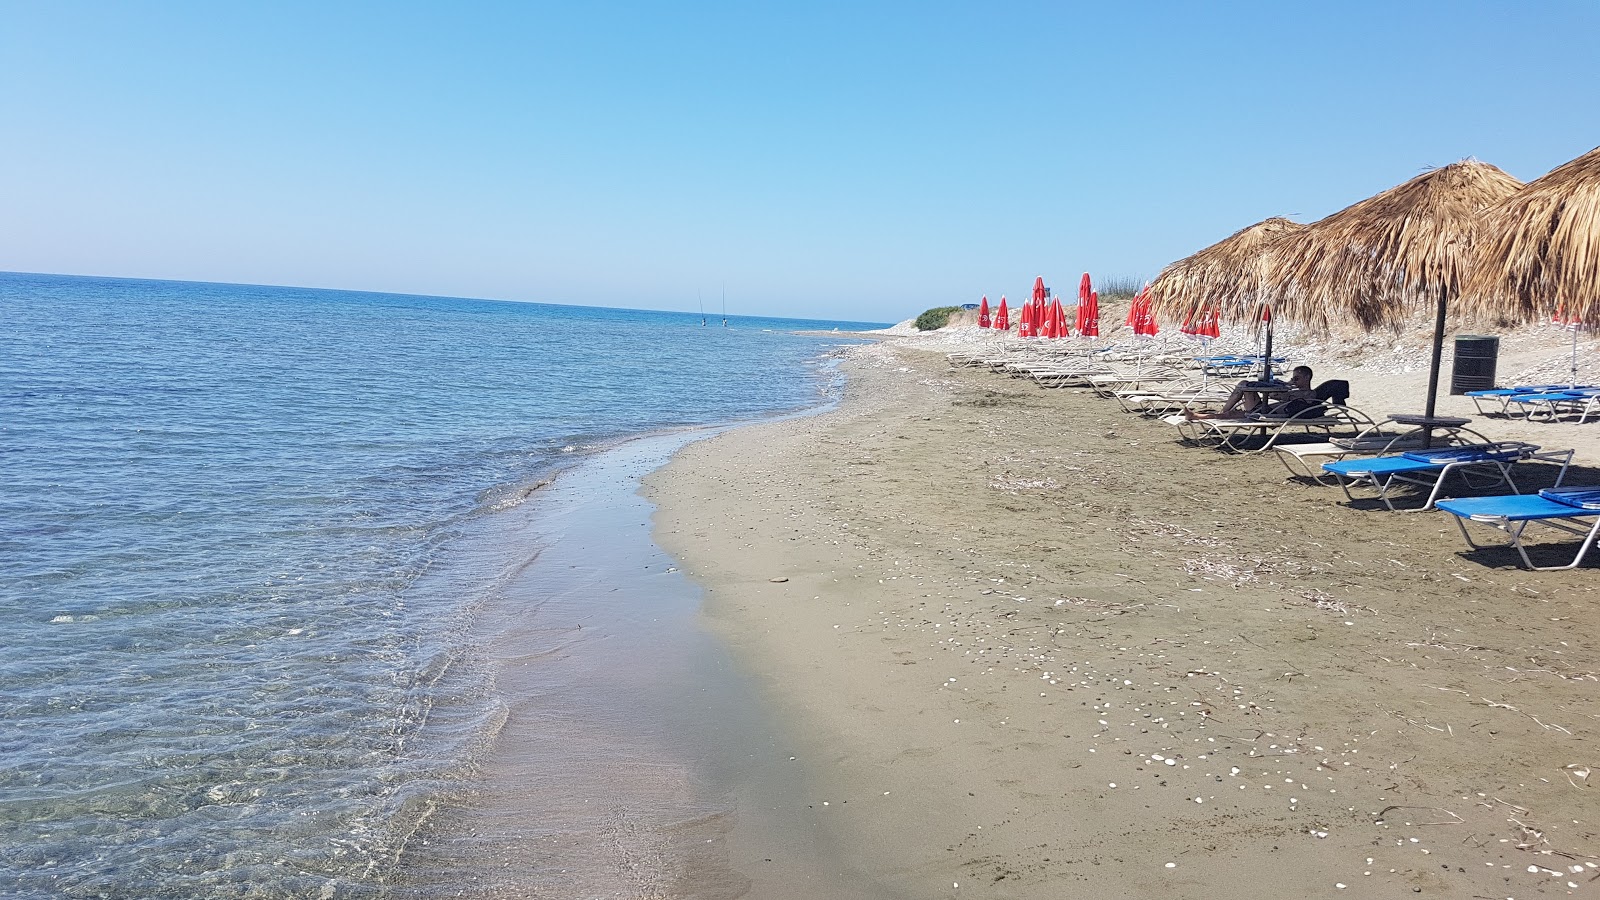 Fotografie cu Mazotos beach - locul popular printre cunoscătorii de relaxare